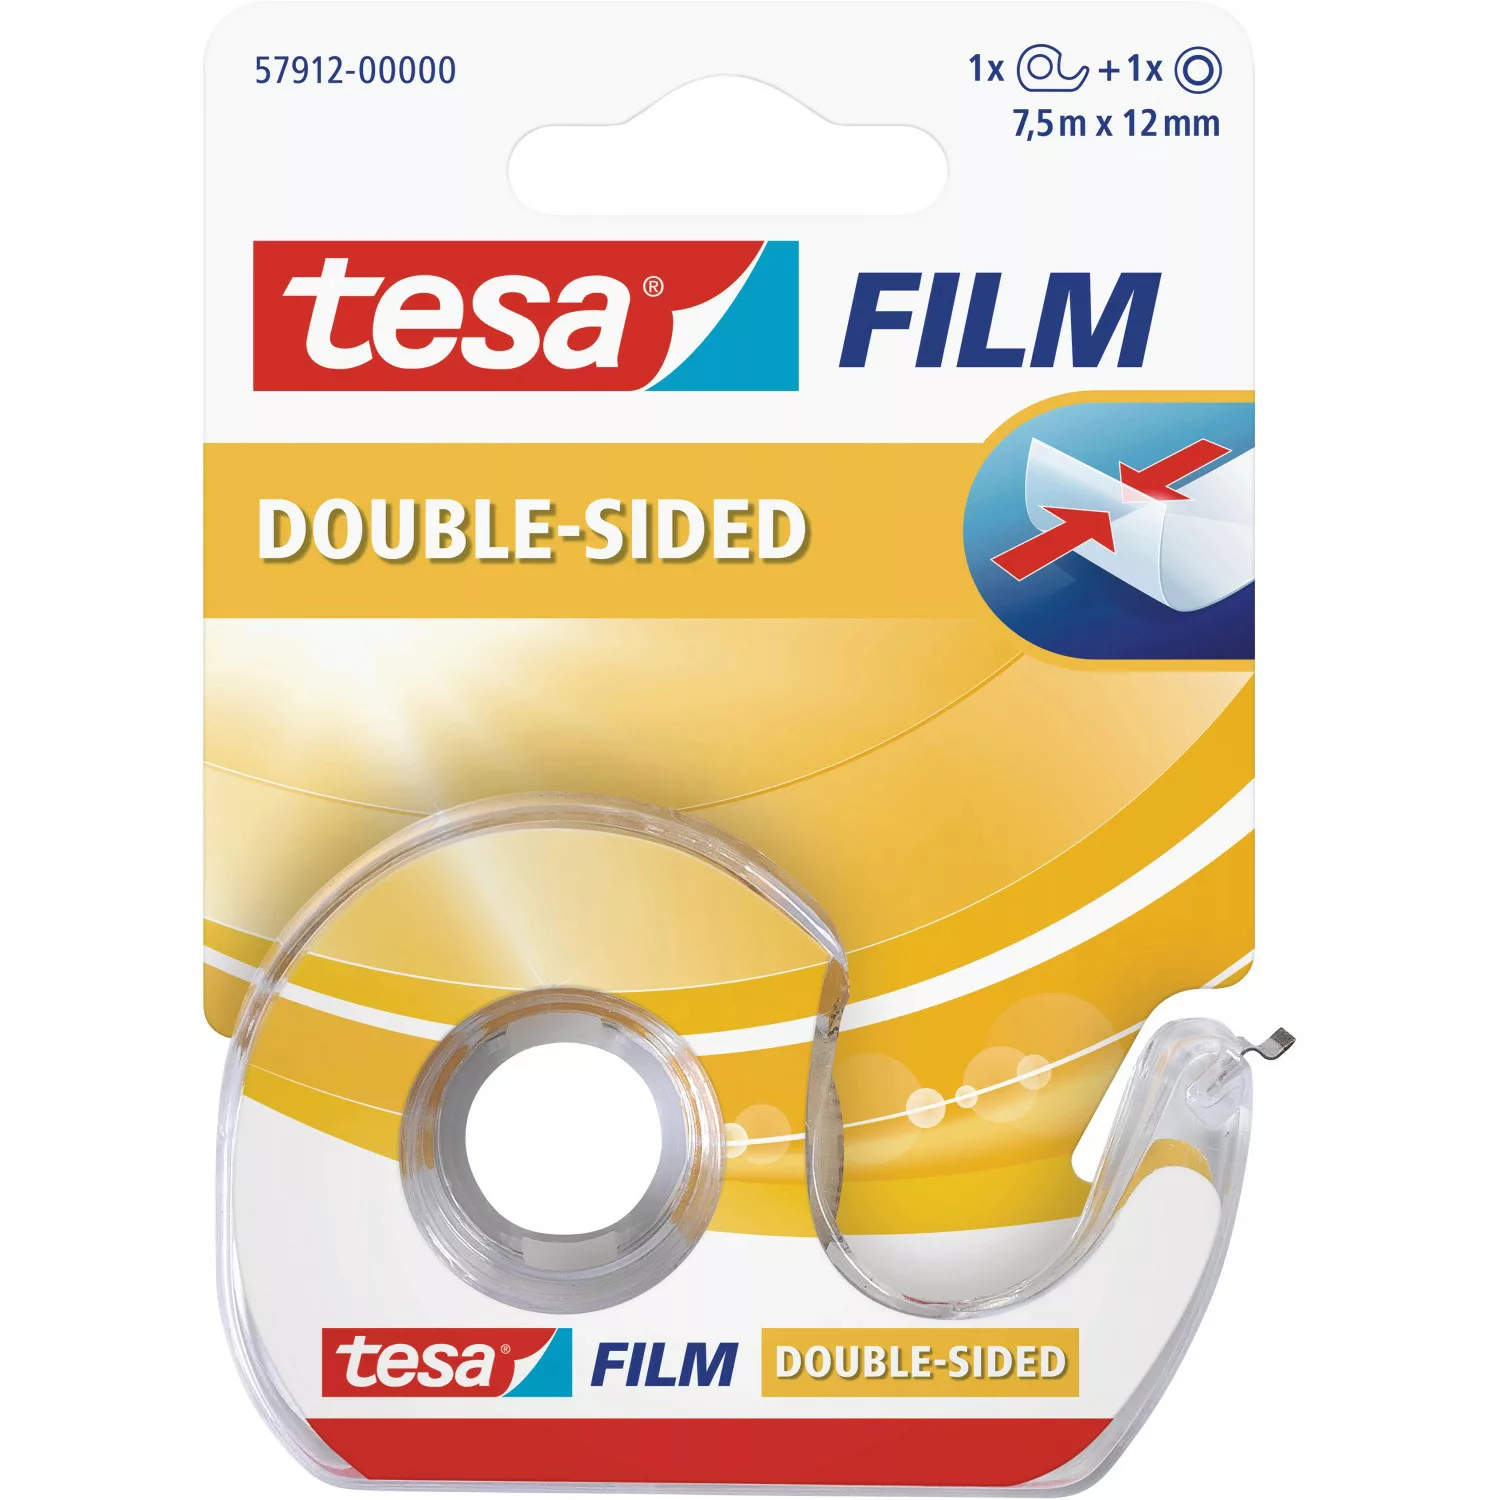 Tesa Film doppelseitig 7,5 m x 12 mm mit Abroller günstig online kaufen